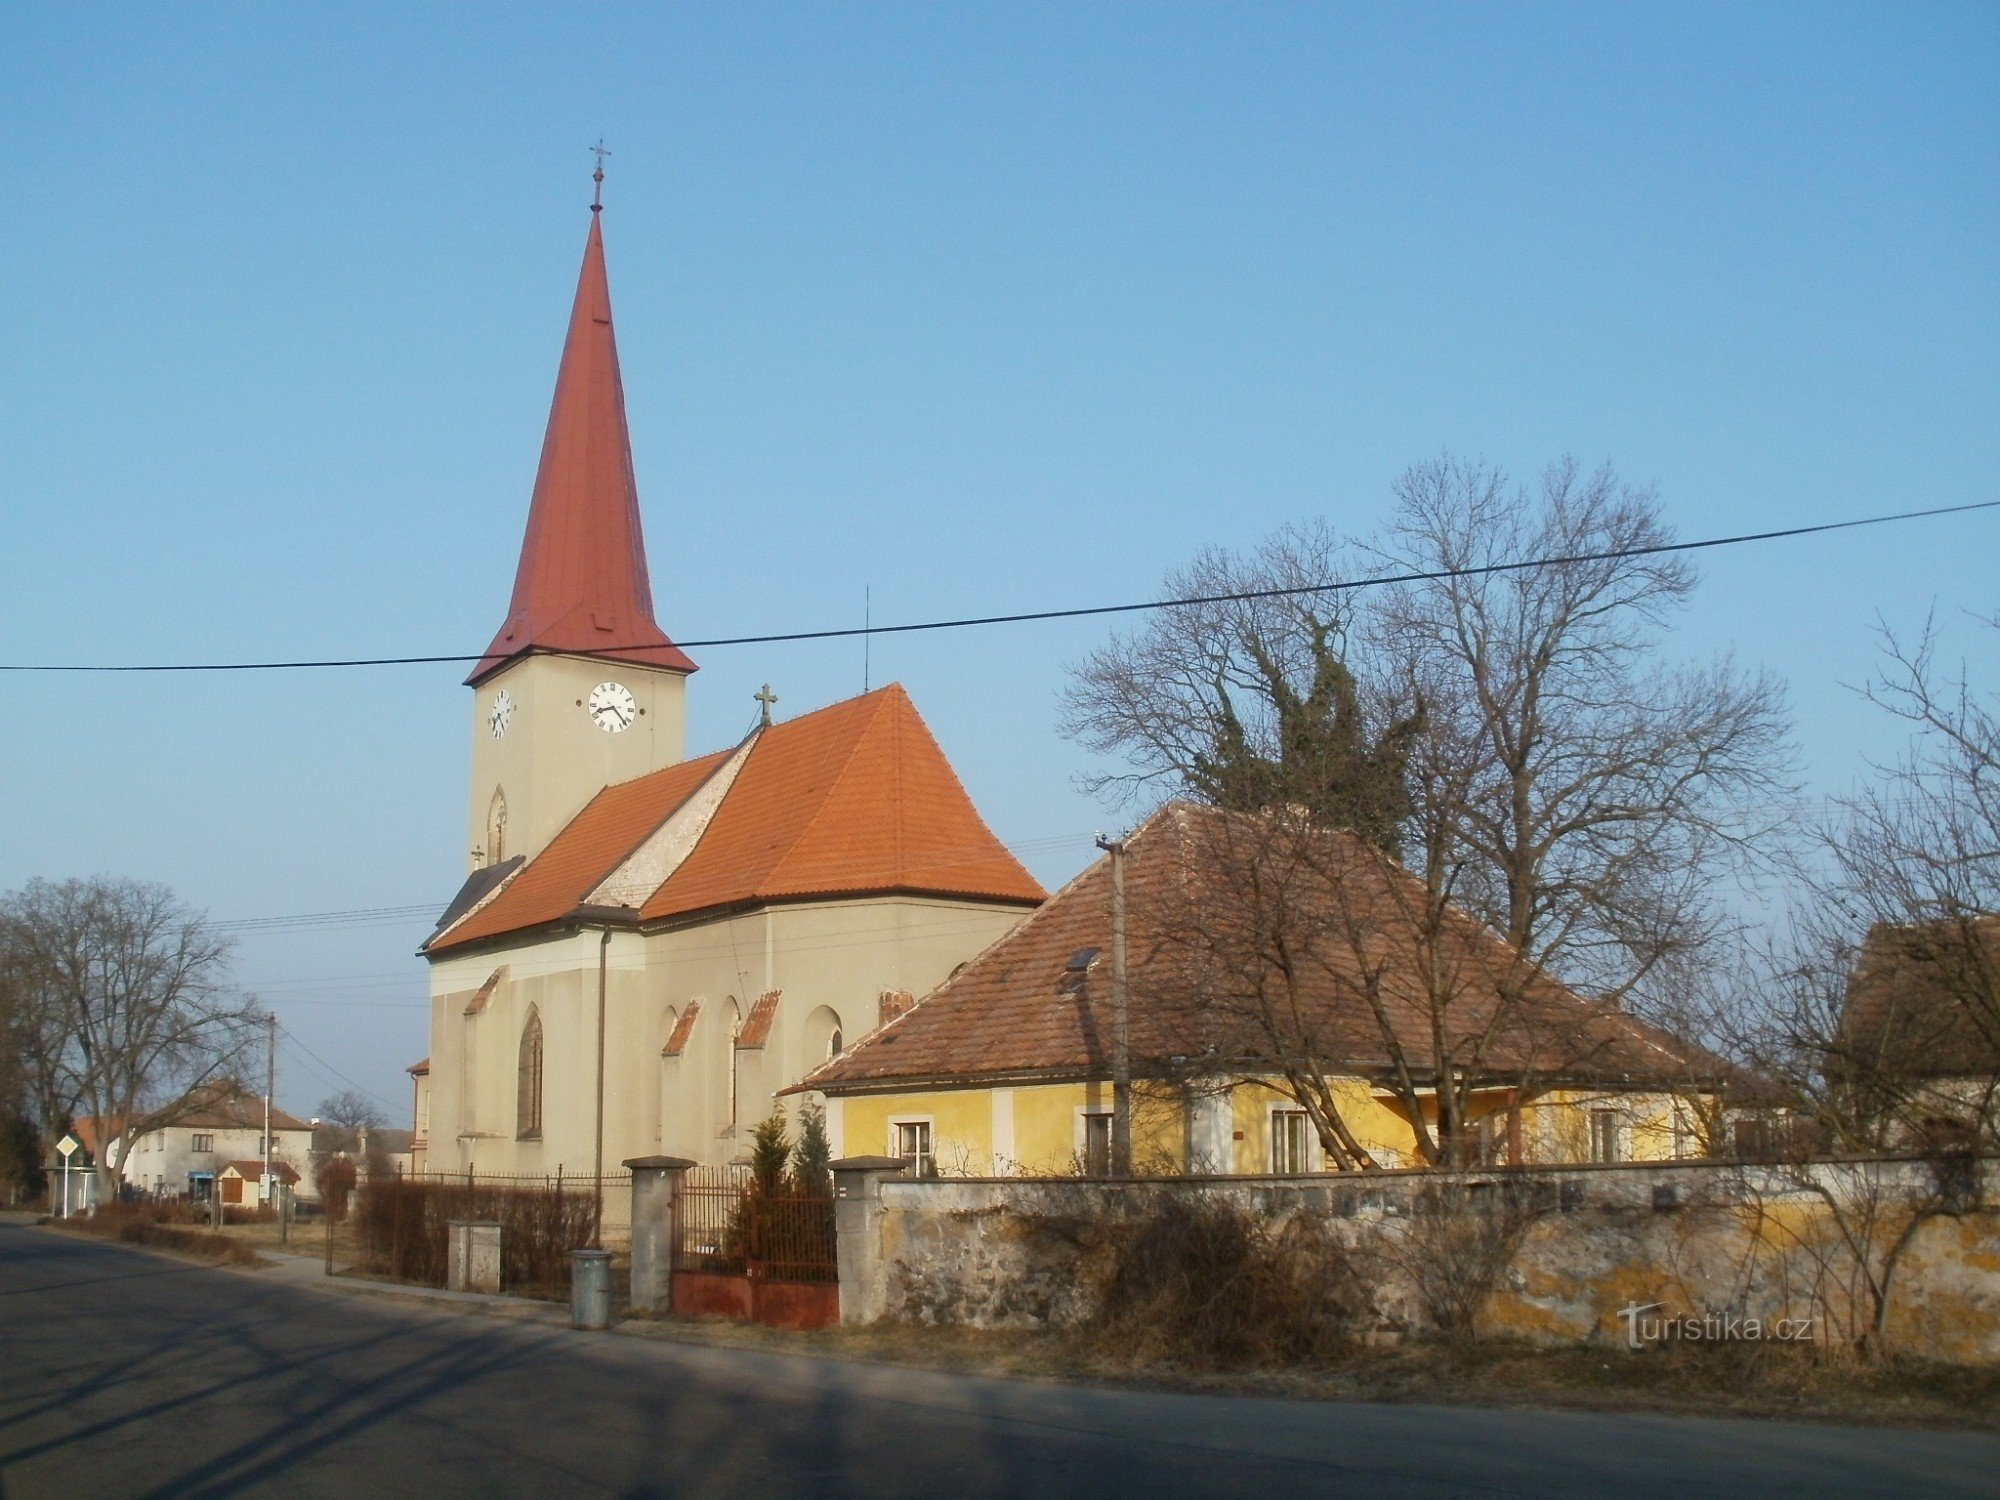 Kunětice - nhà thờ St. Bartholomew